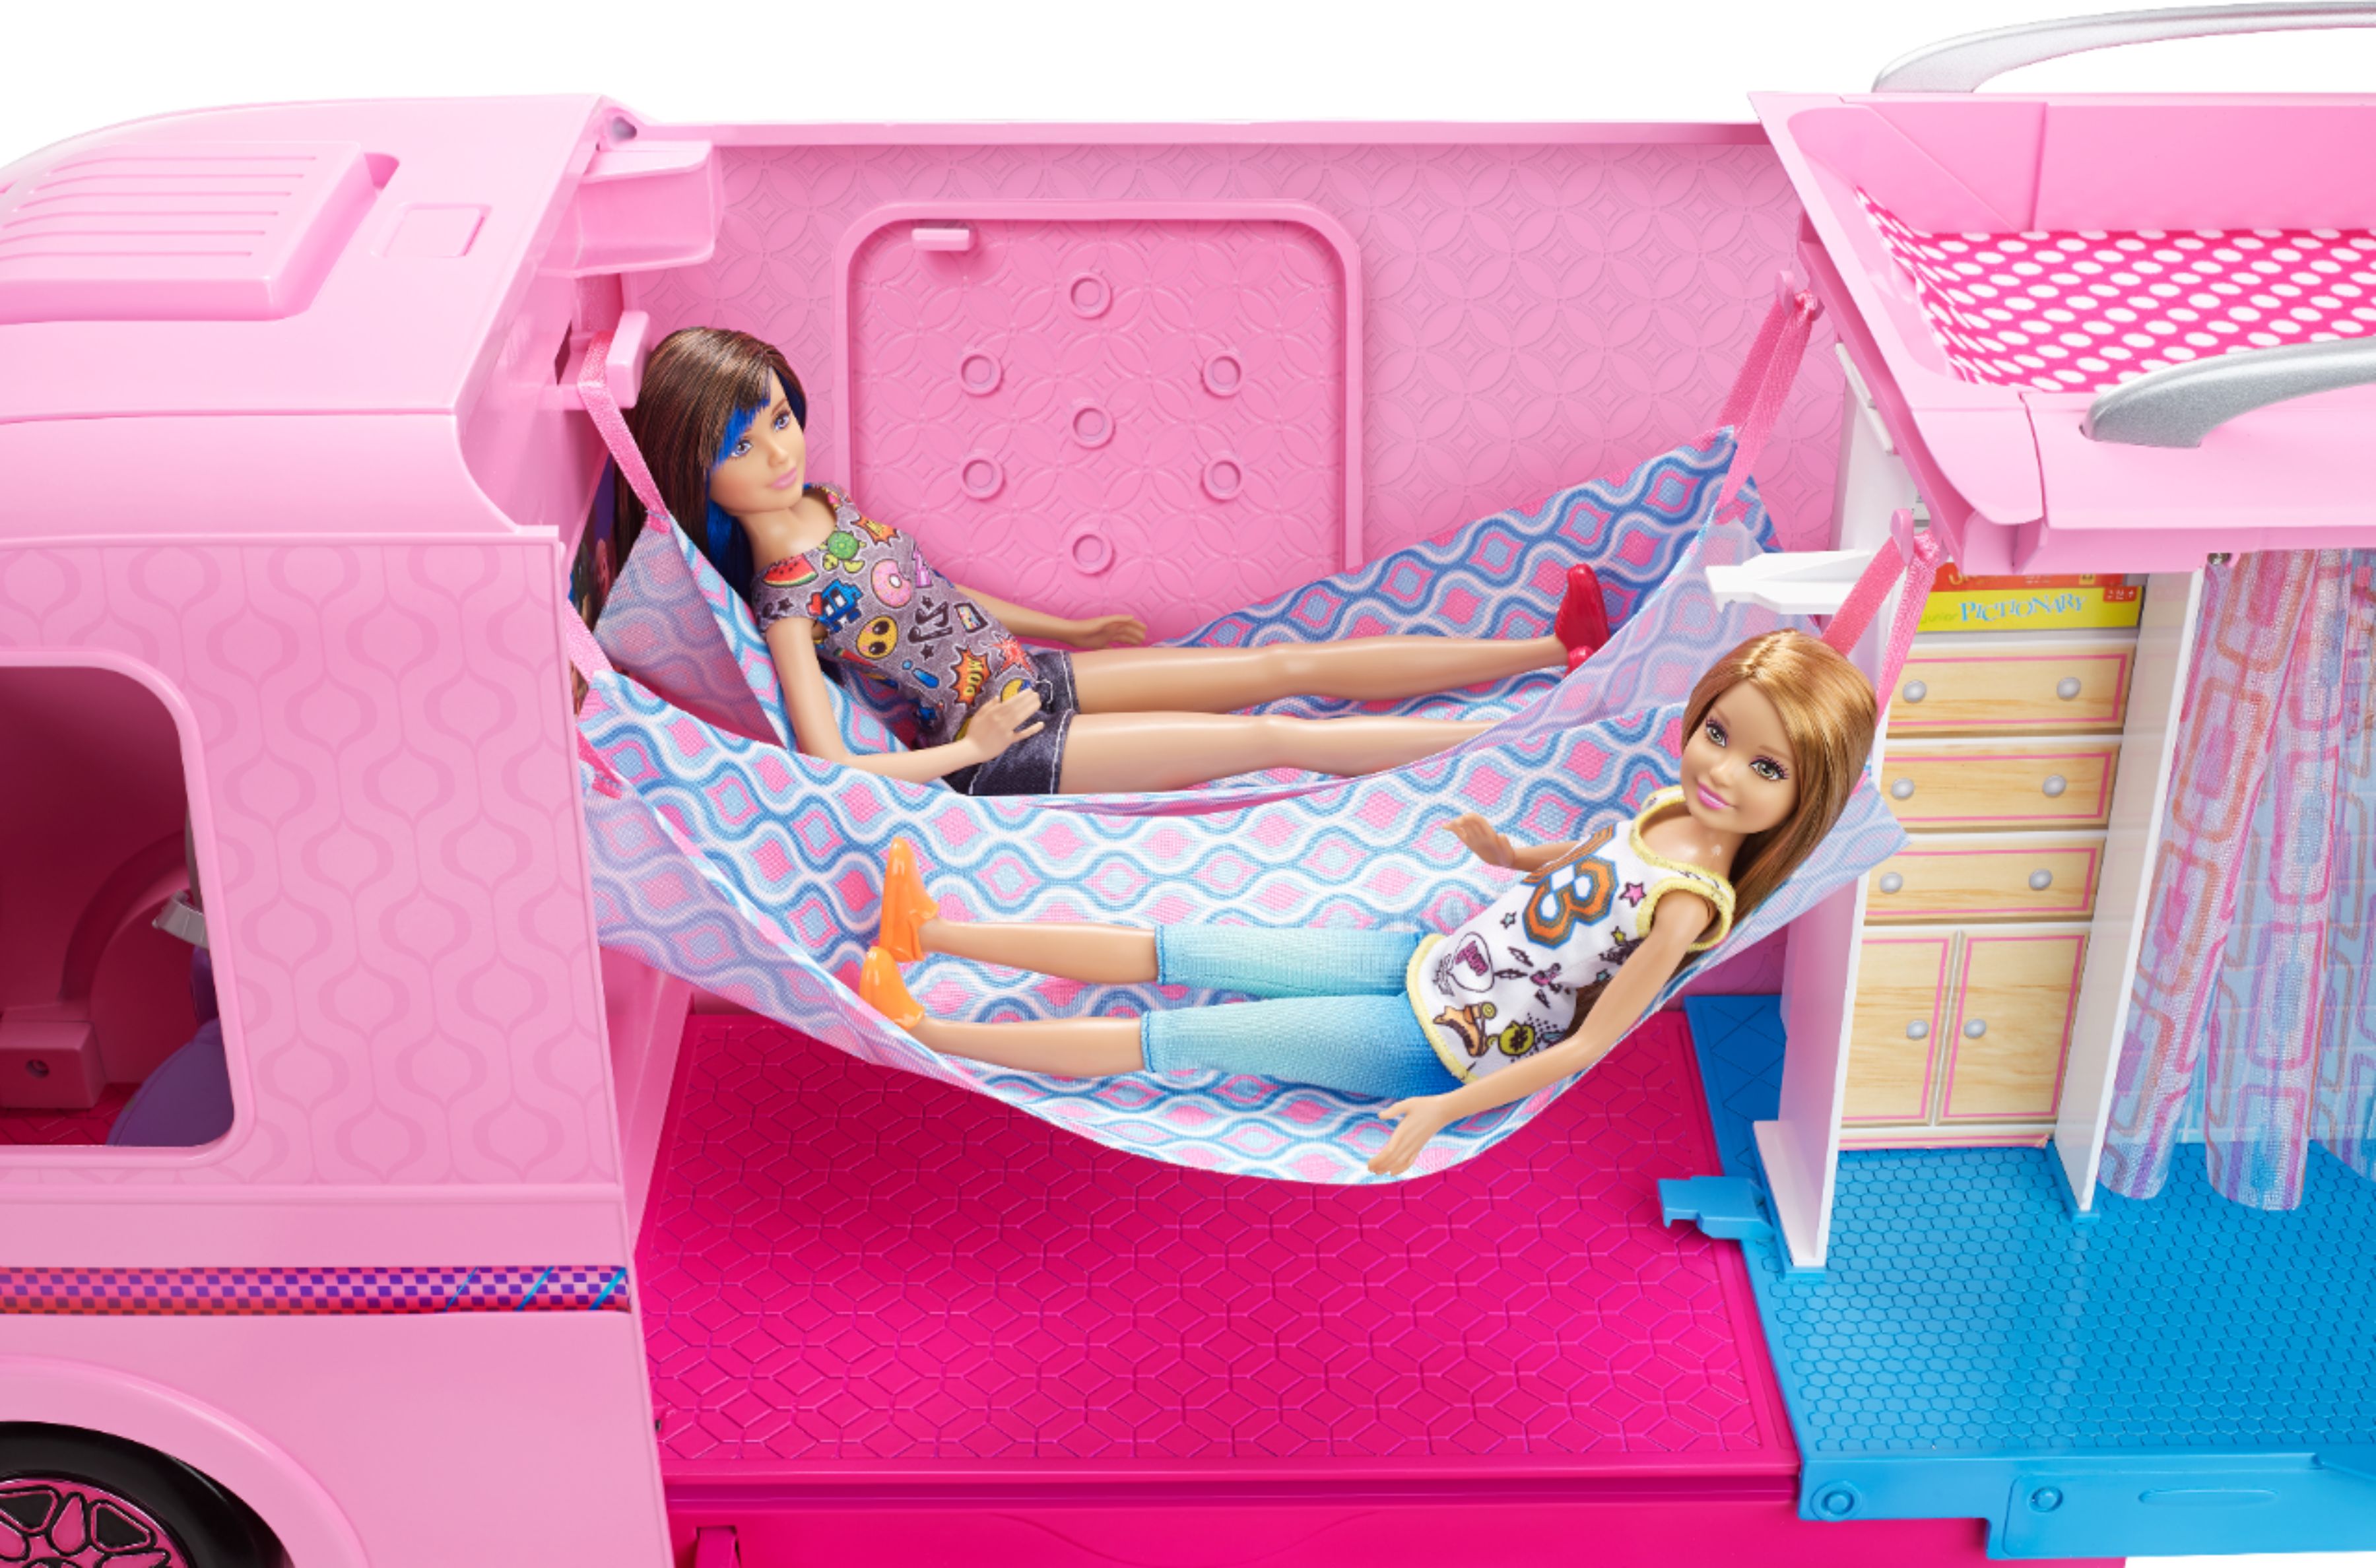 barbie dream camper cyber monday